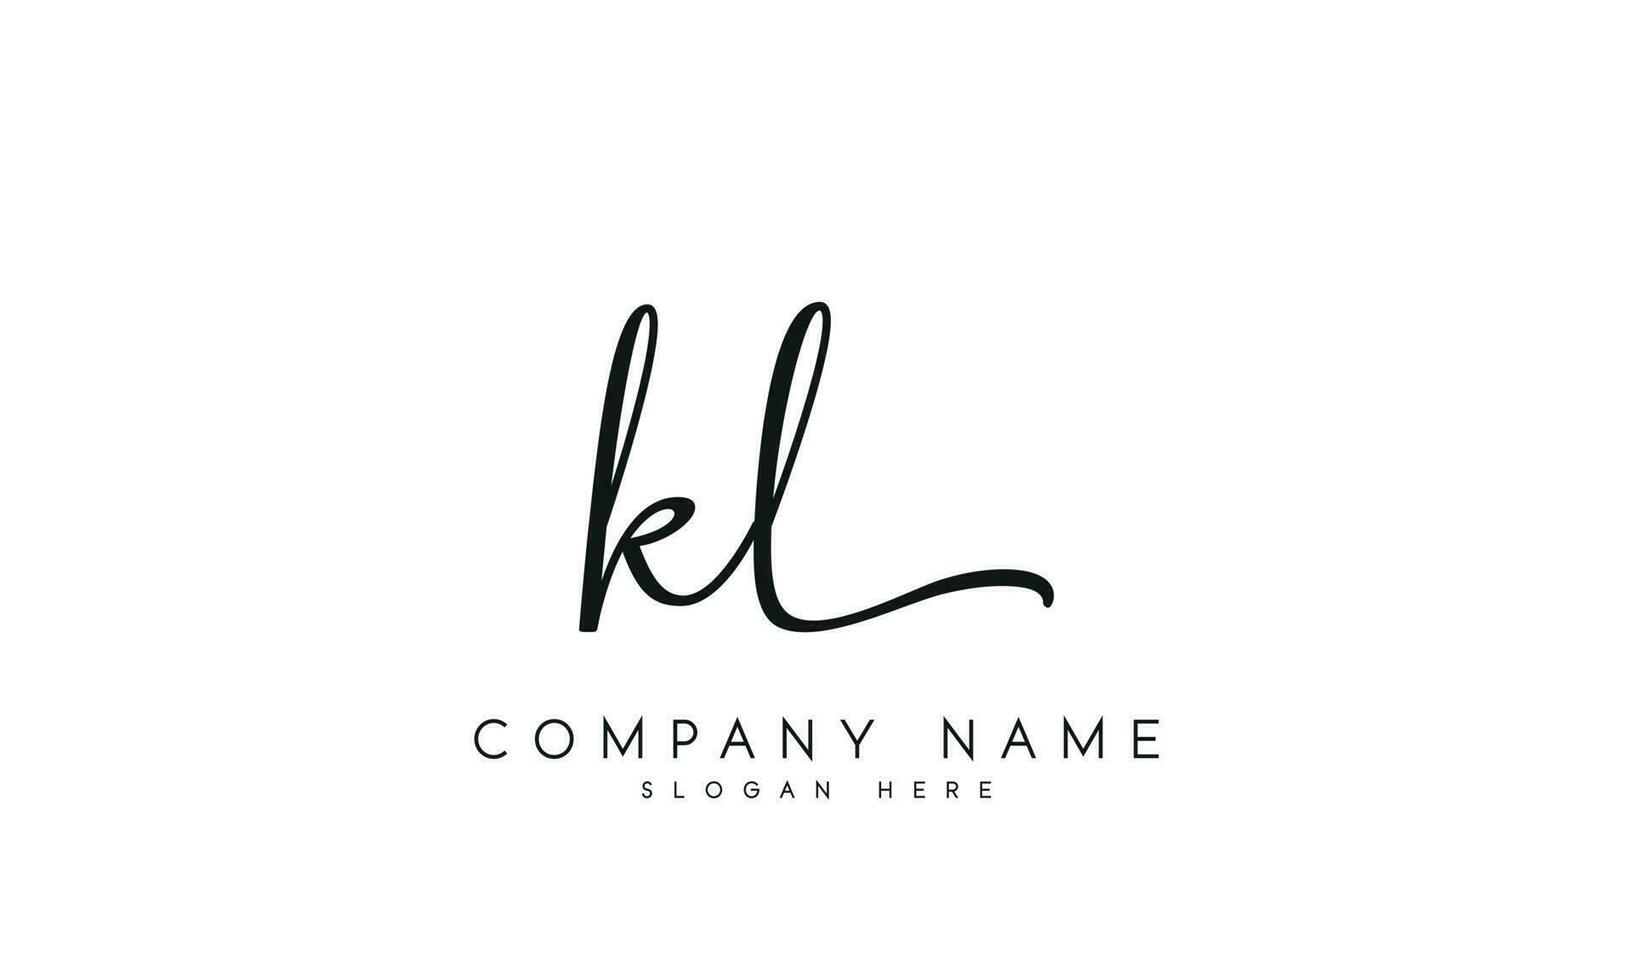 Handwriting KL logo design. KL logo design vector illustration on white background. free vector